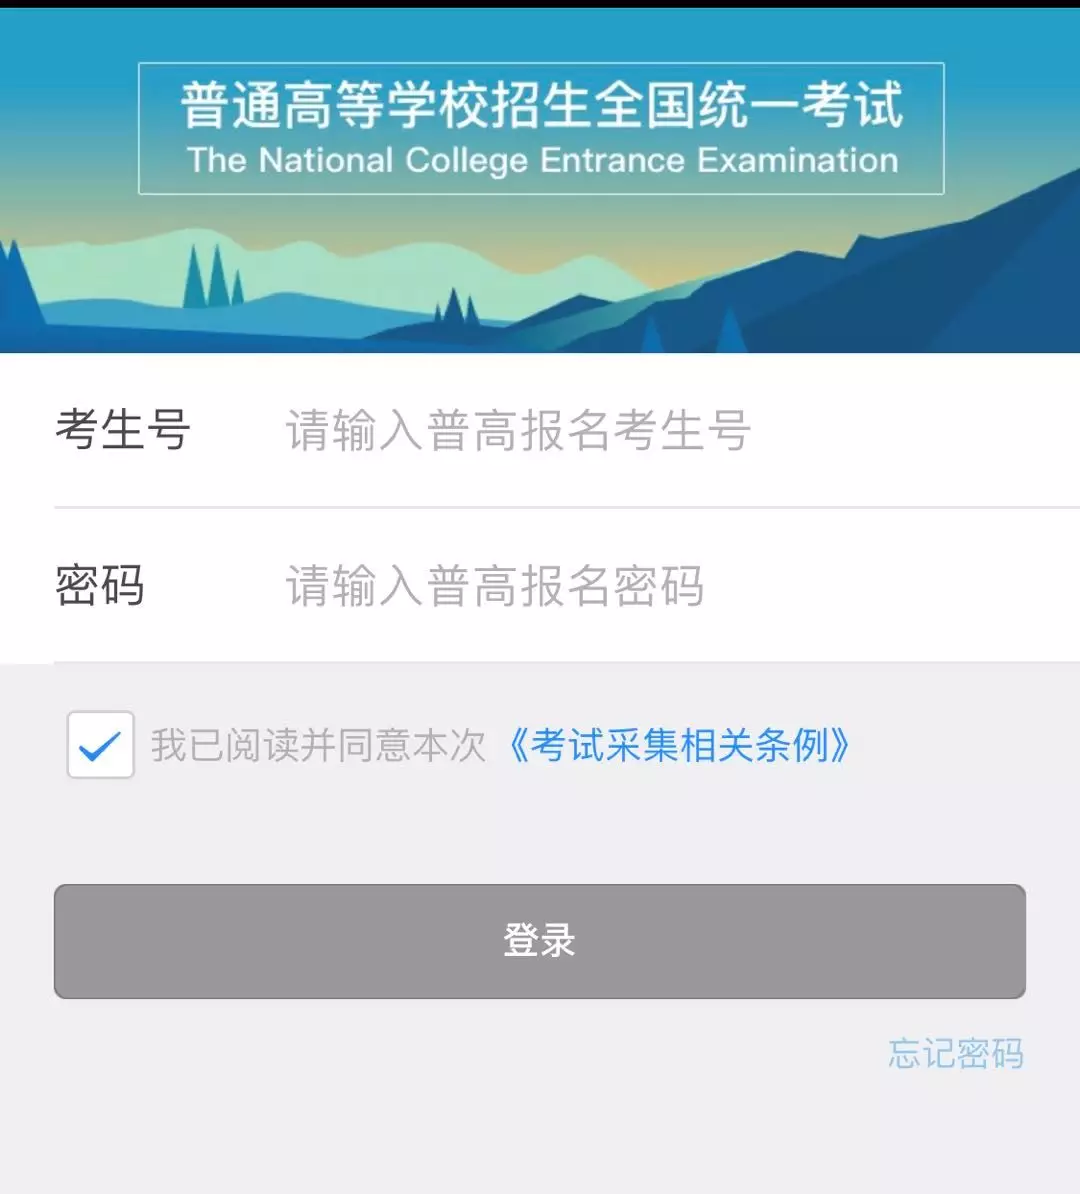 2019下载伟德app伟德BETVlCTOR1946 app报考流程(非常清晰)